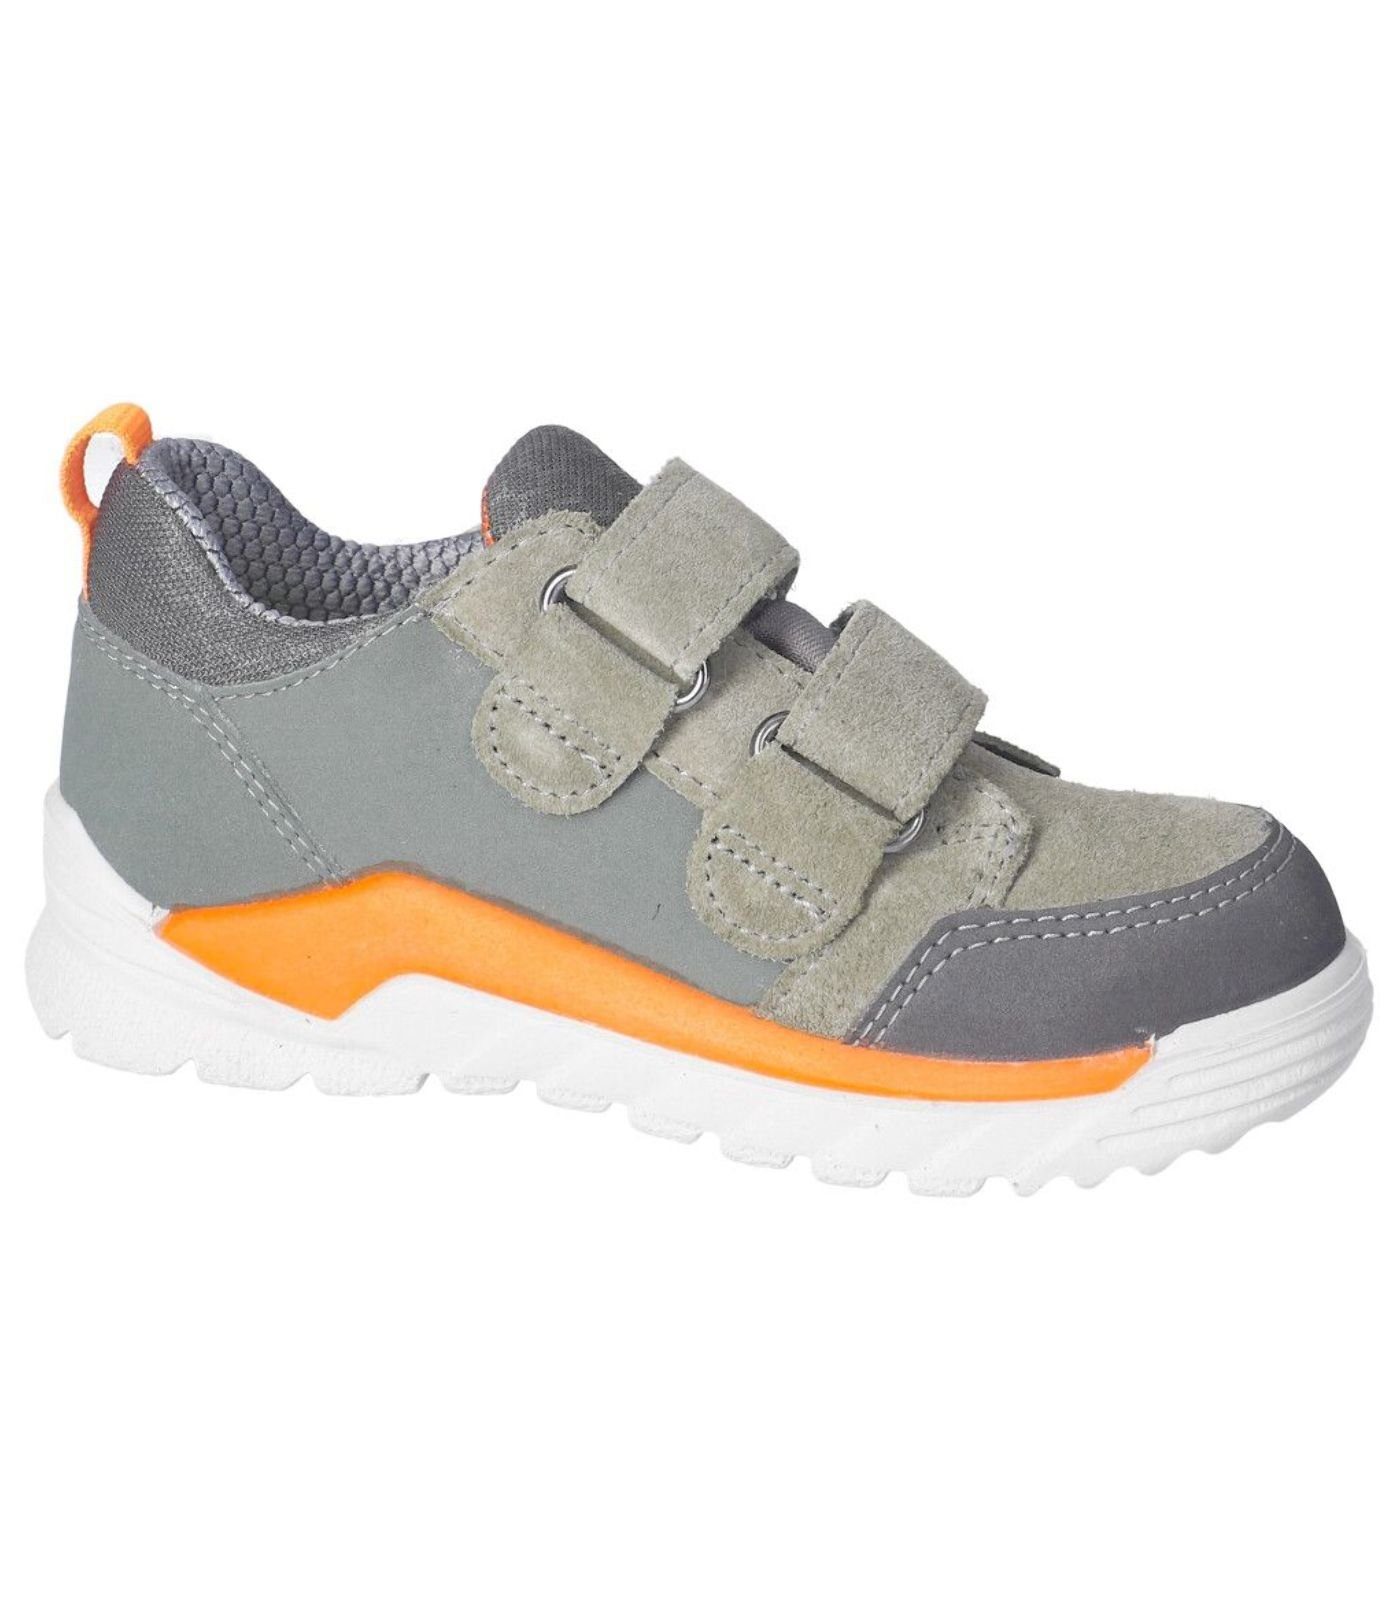 Veloursleder/Textil Sneaker Sneaker eukalyptus/grau (530) Ricosta